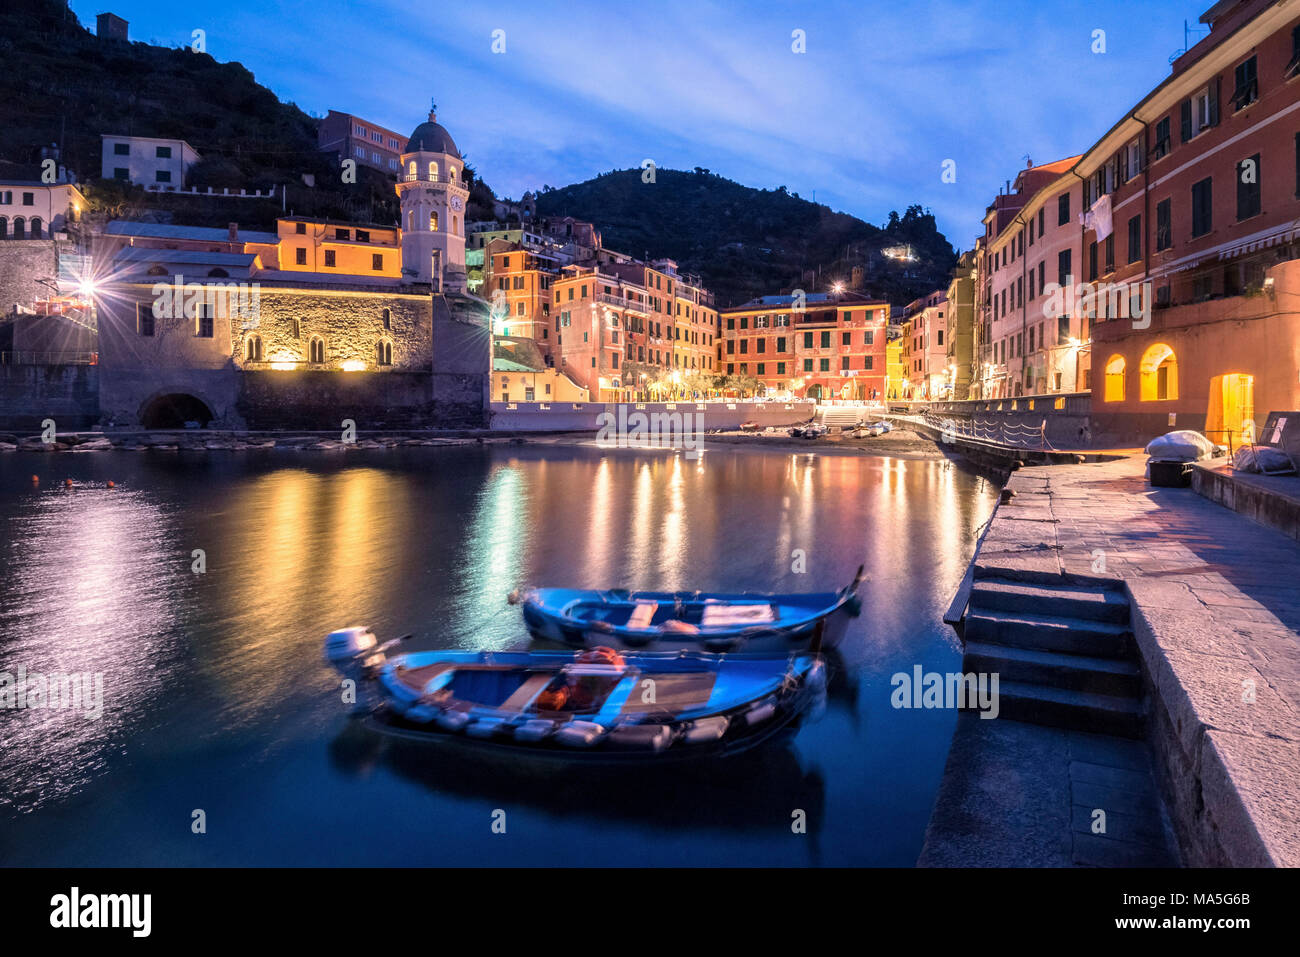 Le port de Vernazza, Cinque Terre, Province de La Spezia, Ligurie, Italie, Europe Banque D'Images